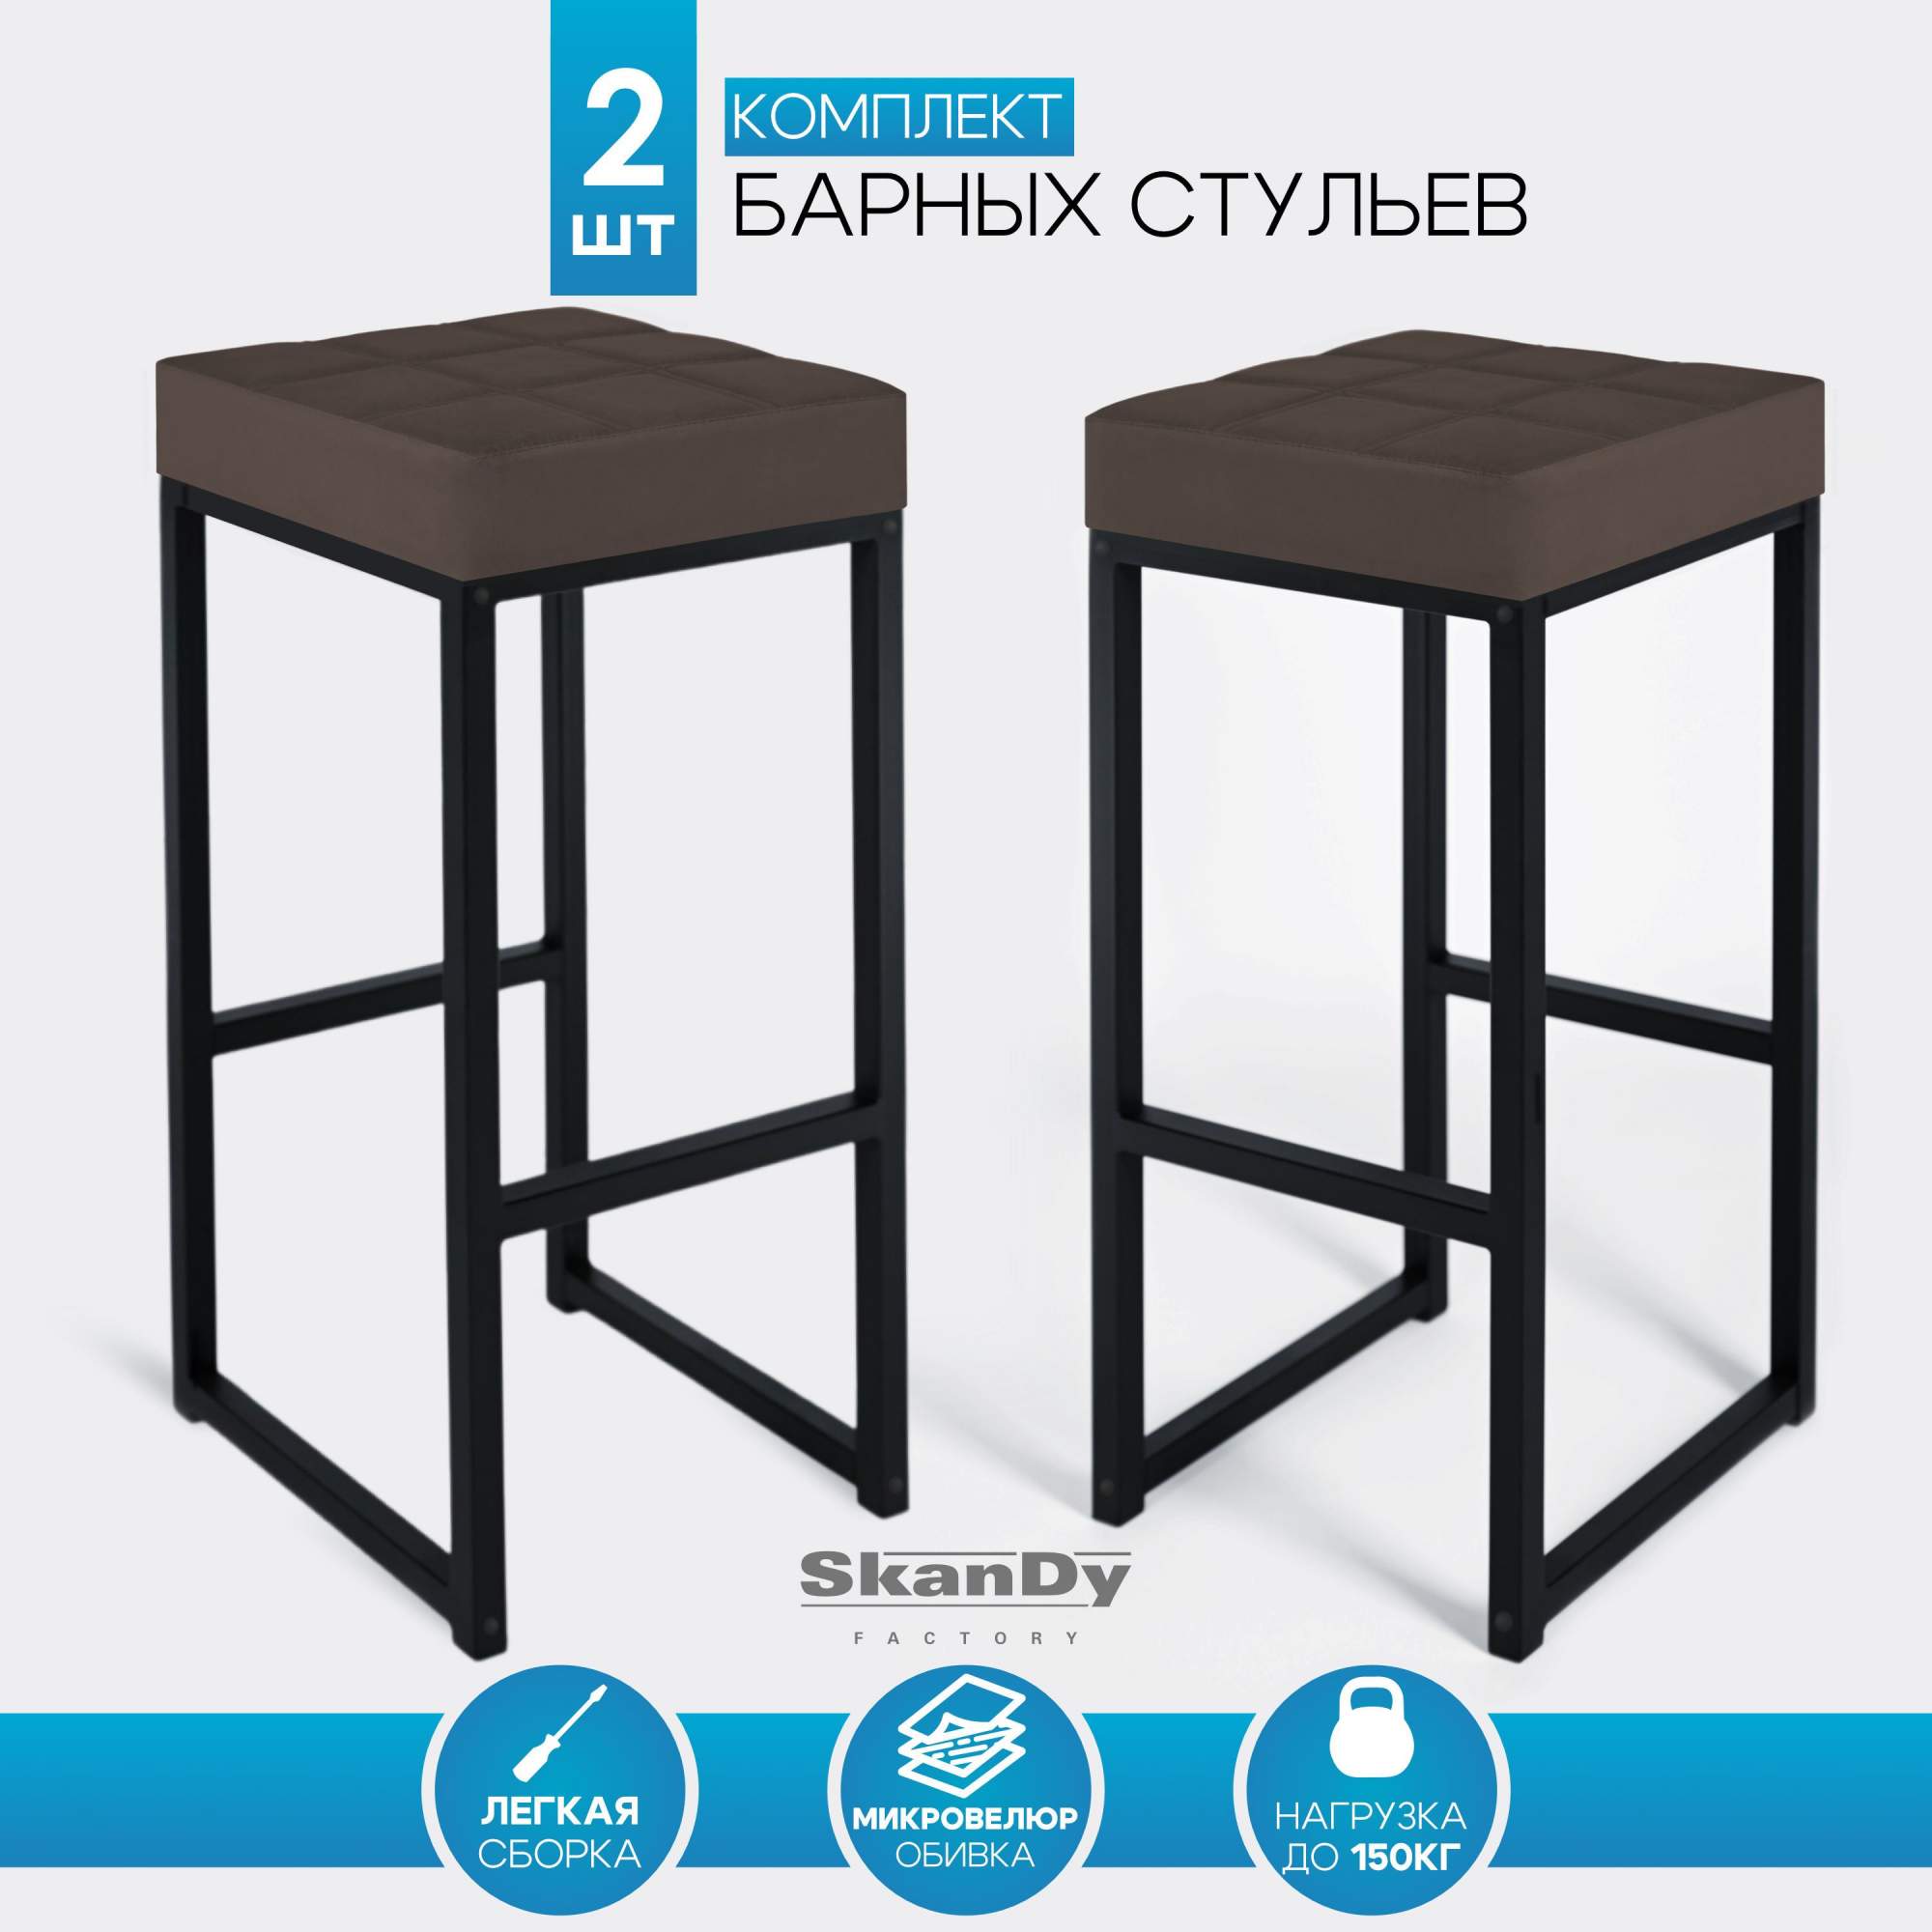 Барный стул для кухни SkanDy Factory 2шт, 80 см, коричневый